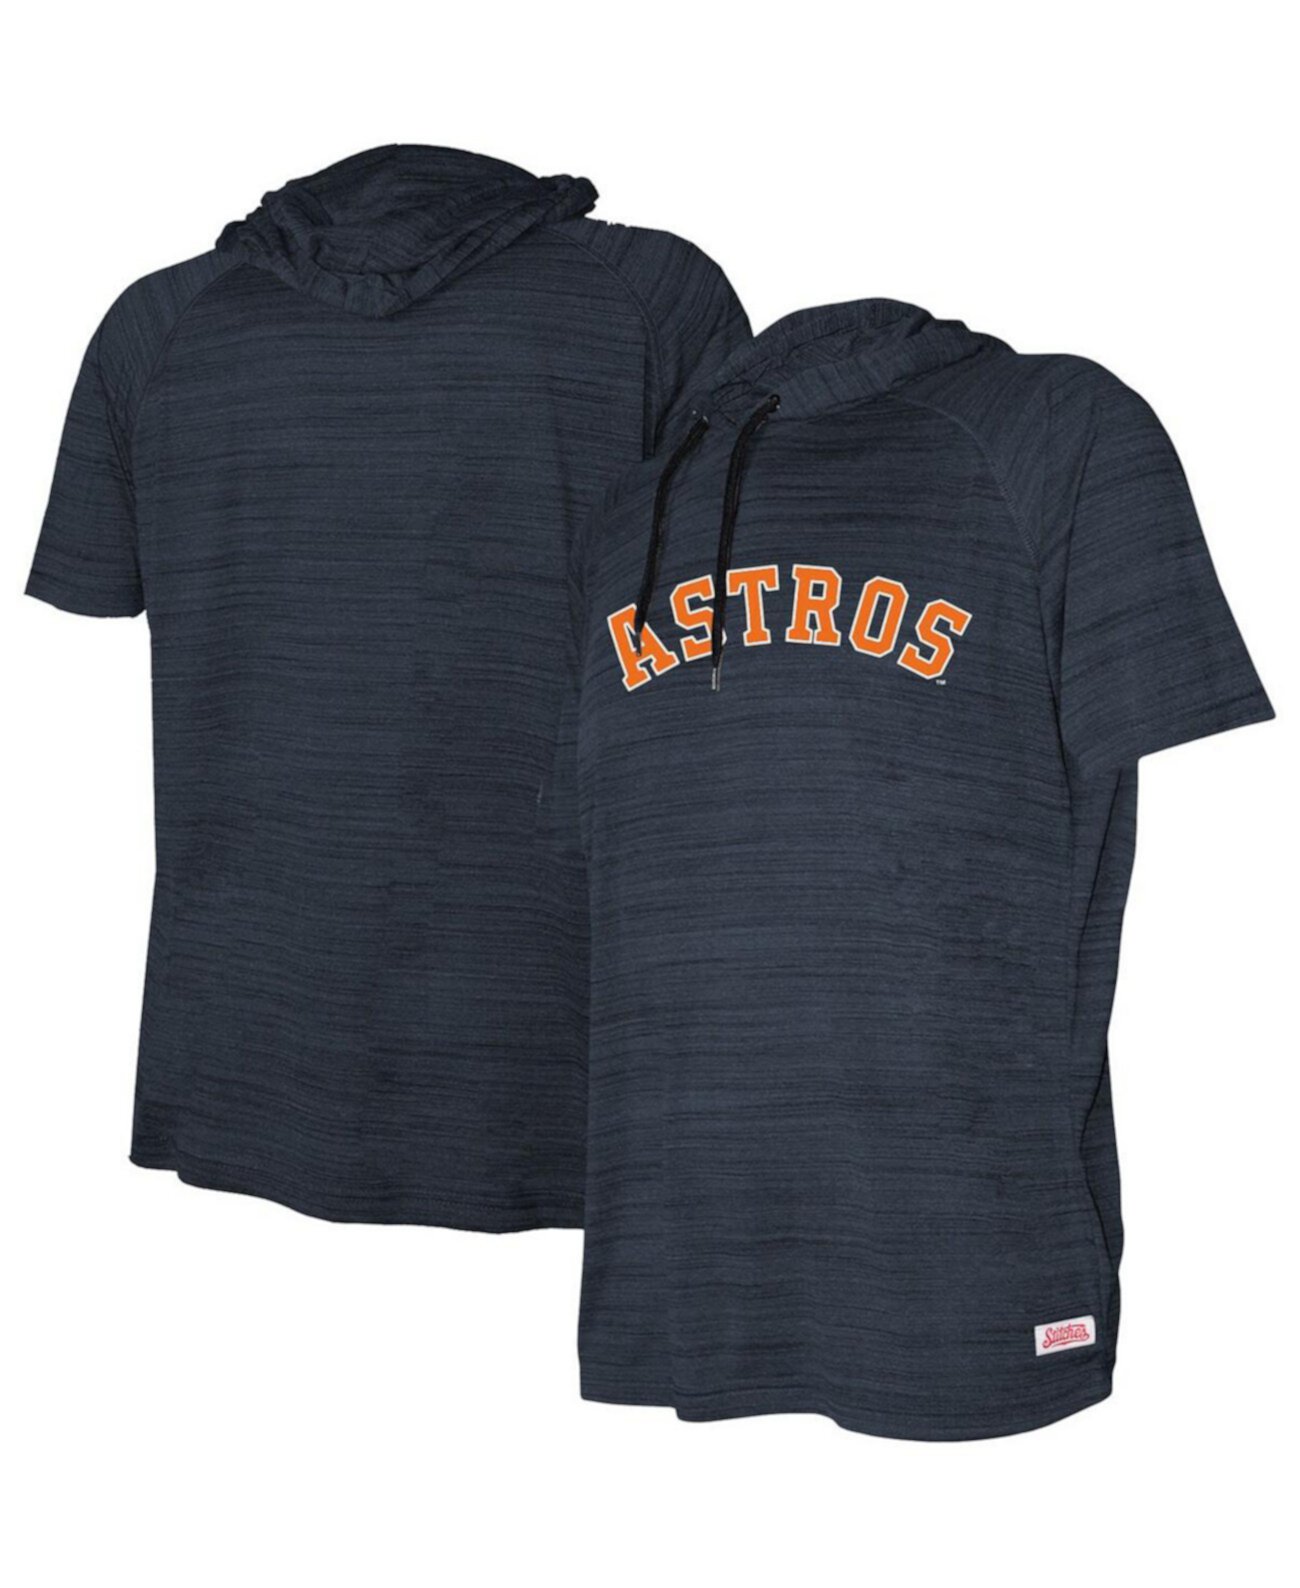 Темно-синий пуловер с короткими рукавами и короткими рукавами Big Boys and Girls Houston Astros реглан с капюшоном Stitches